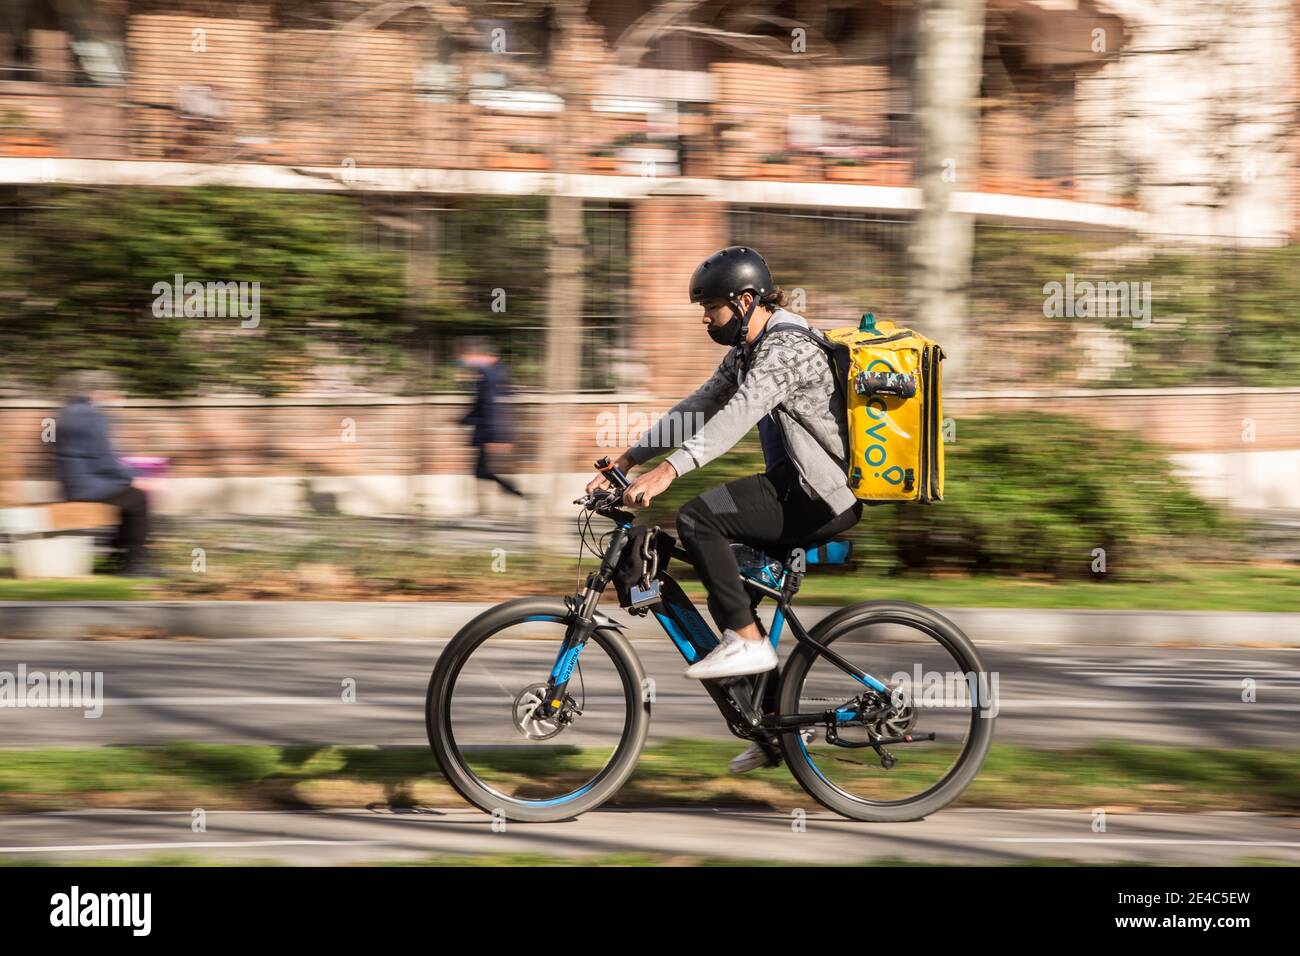 Cataluña, 22 de enero de 2021. Glovo app delivery man visto montar una bicicleta.el Ministerio de Trabajo de España está desarrollando un marco legislativo que abarca la actividad de las